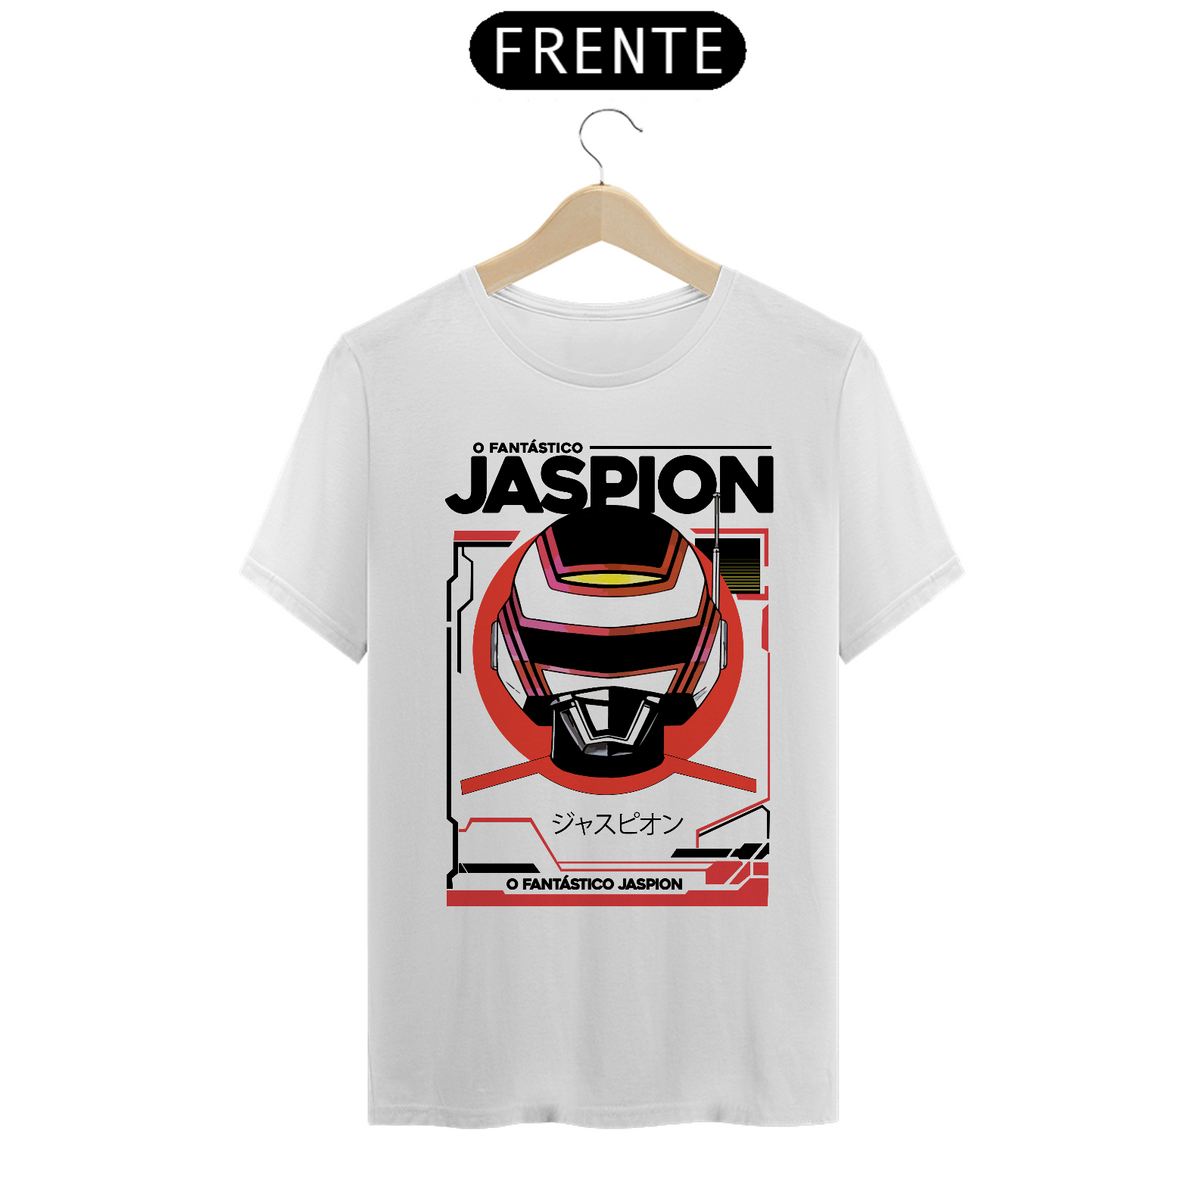 Nome do produto: Camiseta - Jaspion - NOSTALGIA